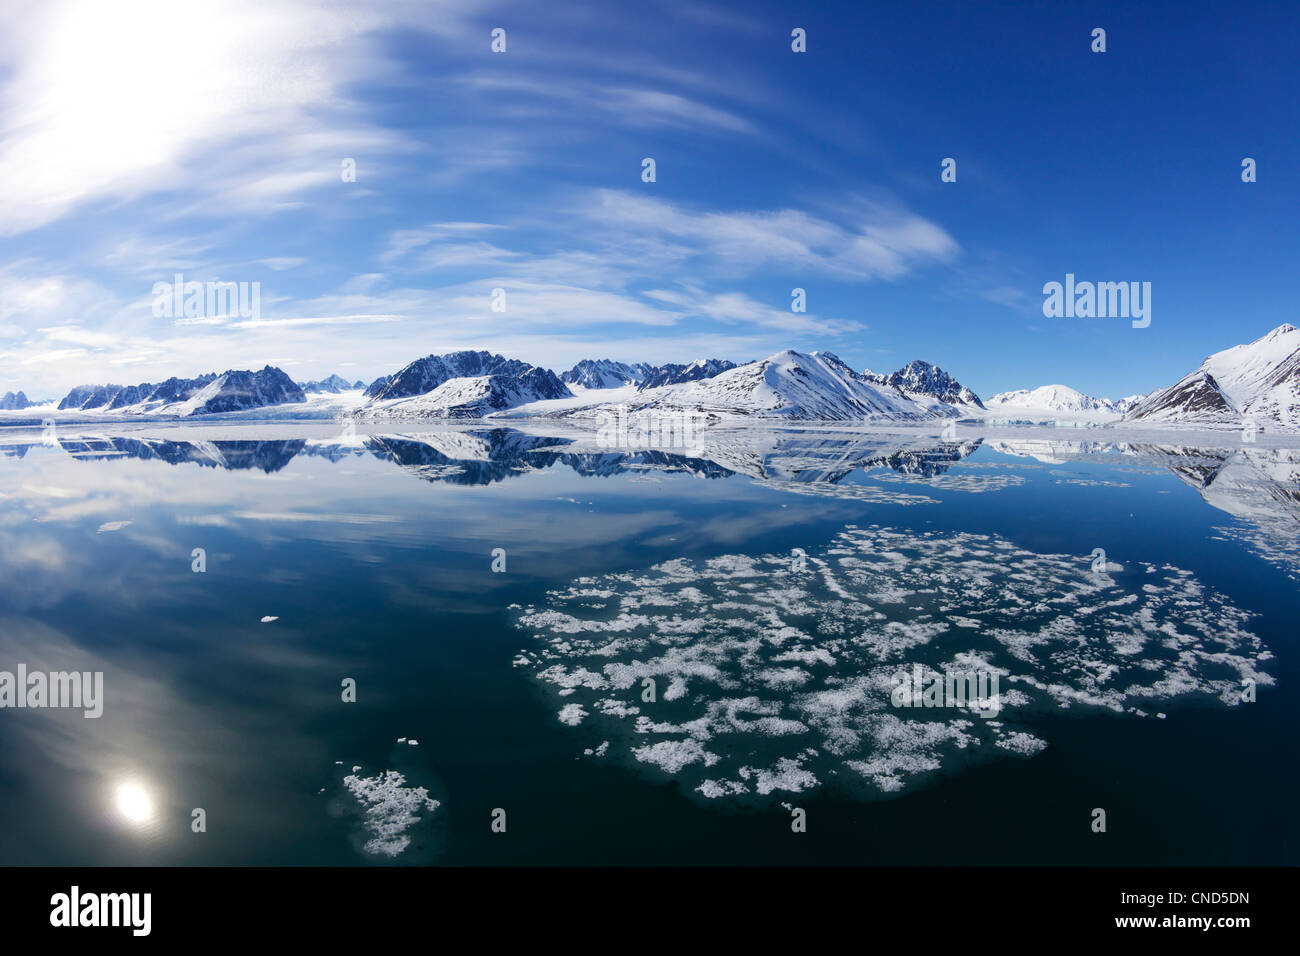 Sea ice and Monaco glacier in summer, Liefdefjorden, Spitzbergen, Svalbard, Arctic Norway, Europe Stock Photo